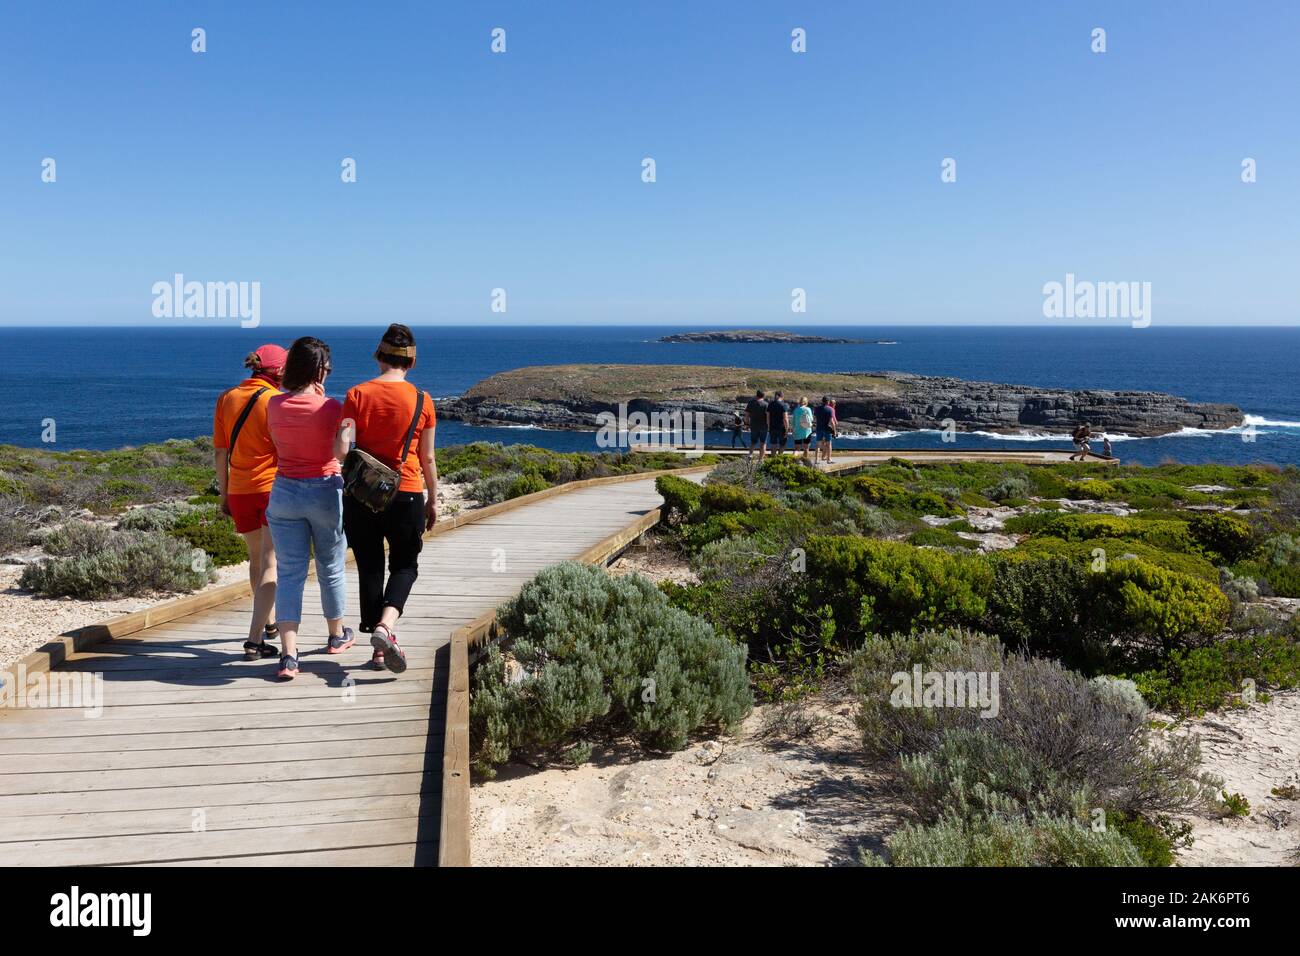 Australien reisen - Kangaroo Island Australien Touristen zu Fuß auf die Küste, das West End von Kangaroo Island - die Casuarina Inseln zu sehen Stockfoto